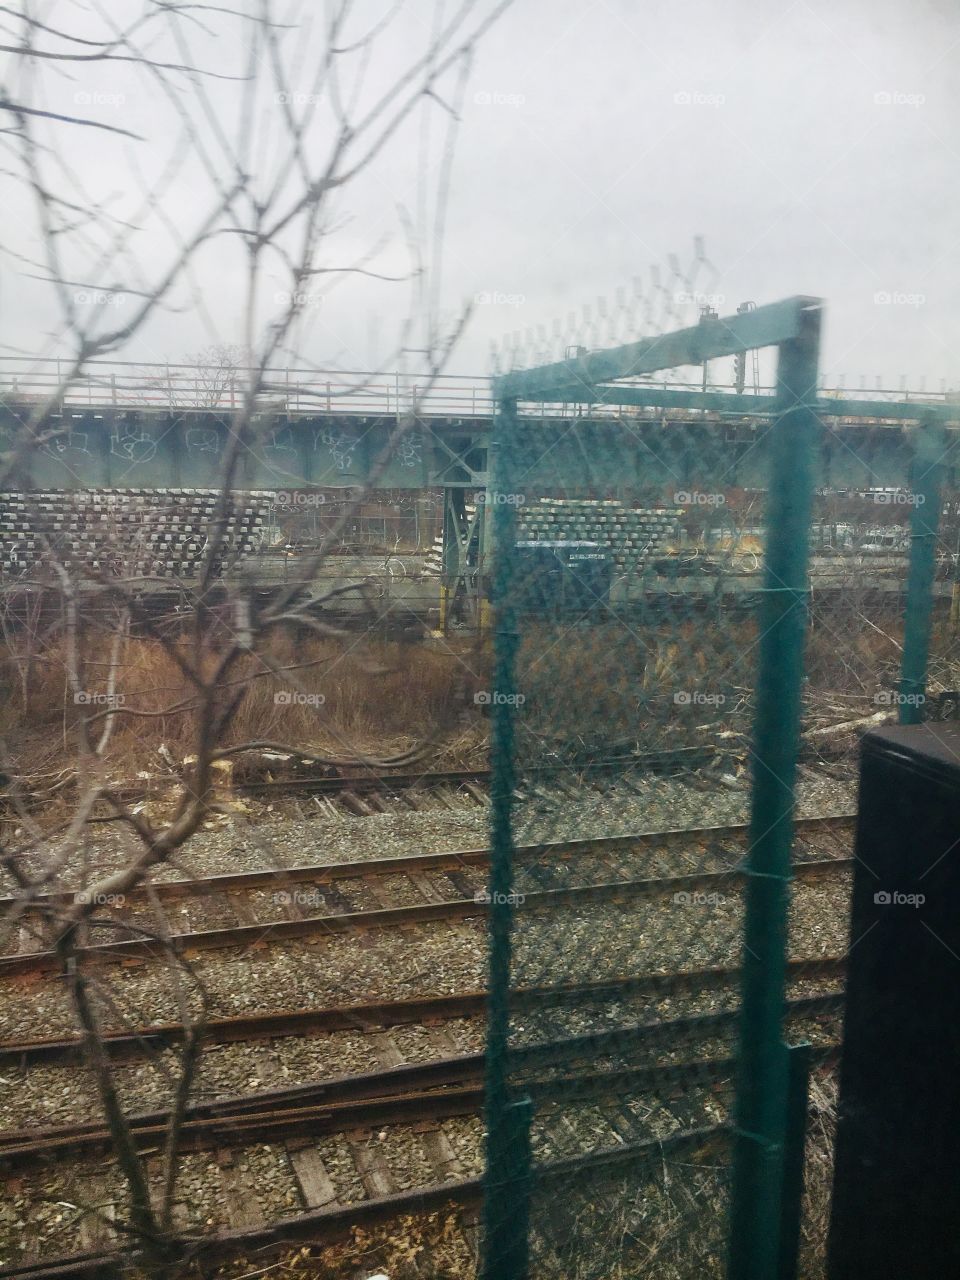 MTA Brooklyn NYC tracks Yard